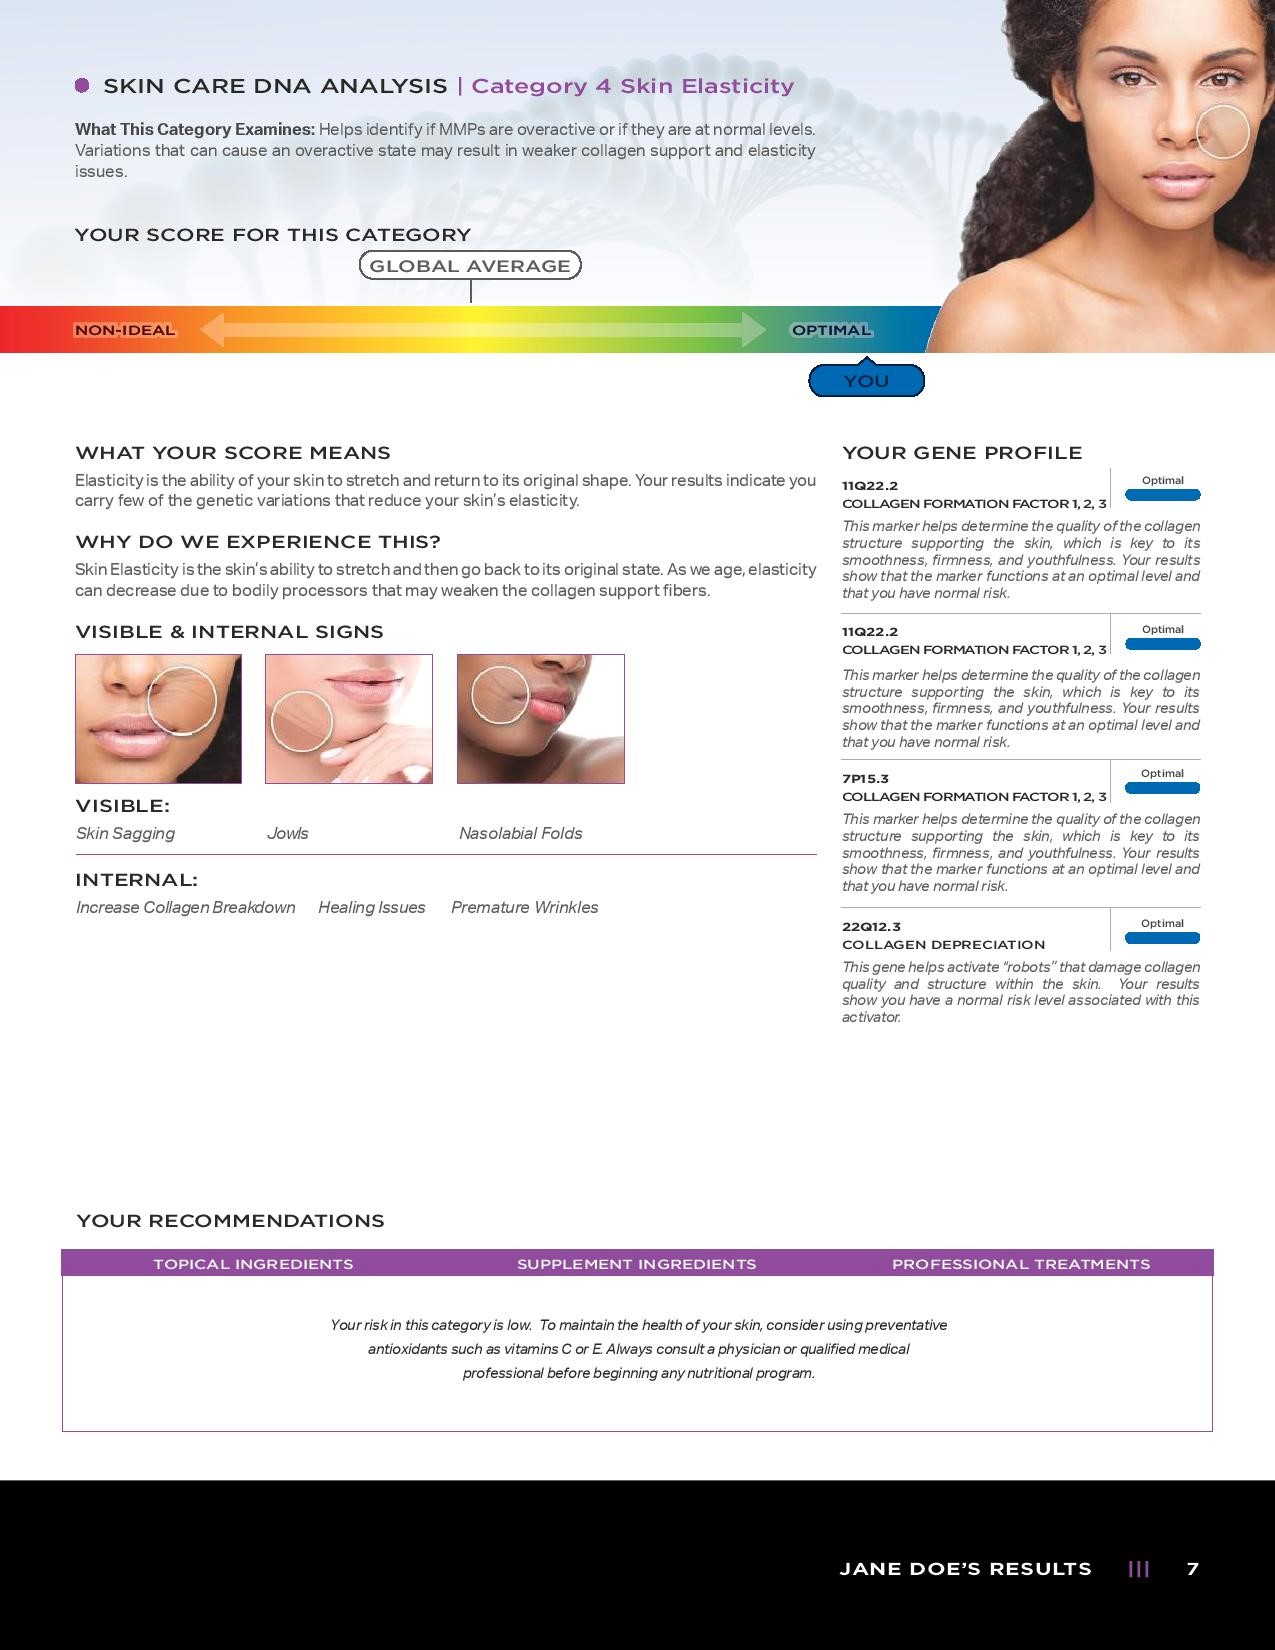 Pagina 7 di un esempio di referto del test del DNA per la cura della pelle